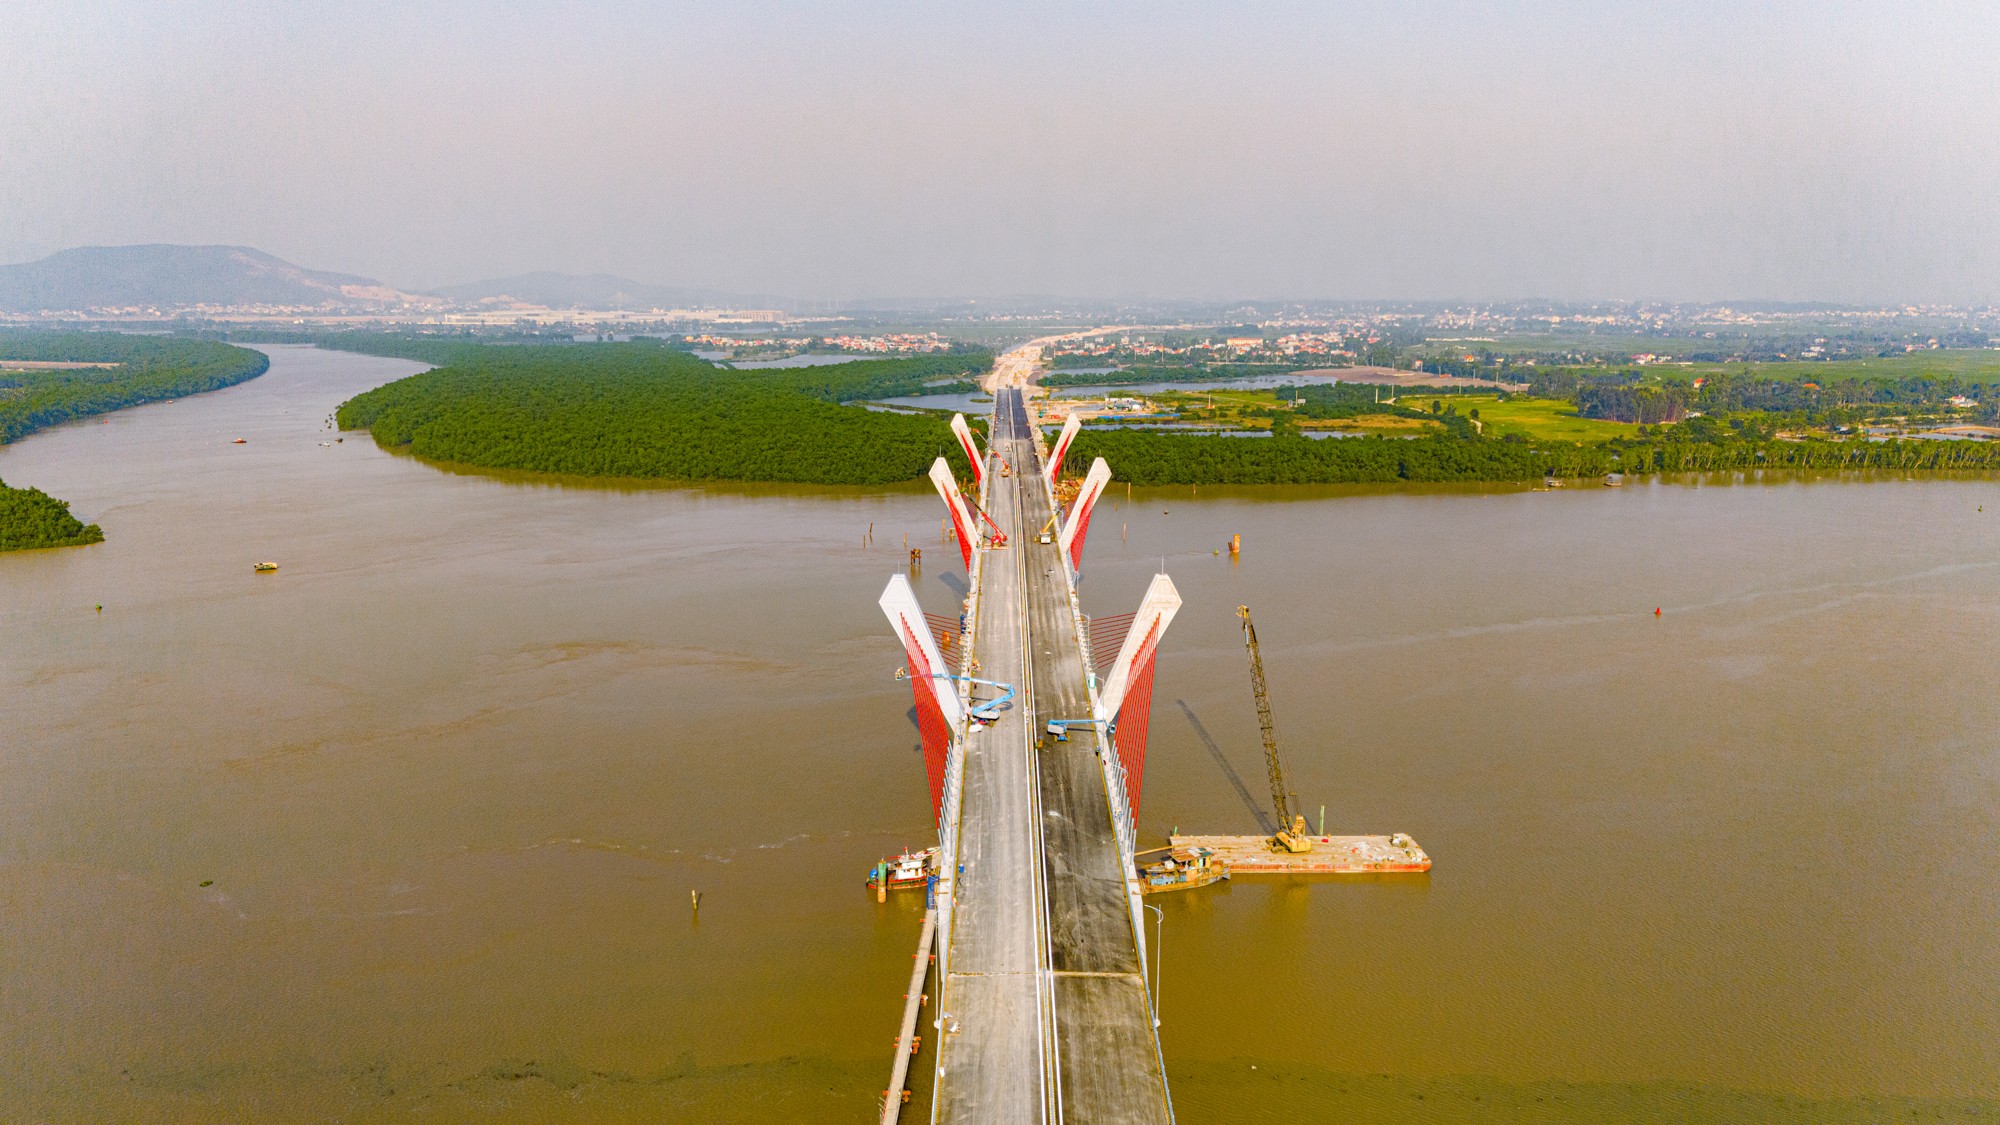 Toàn cảnh khu vực được xây cây cầu trị giá 2.000 tỷ sắp hoàn thành, kết nối Hải Phòng và Quảng Ninh, đưa tuyến phà sông lớn nhất miền Bắc về “nghỉ hưu”.- Ảnh 5.